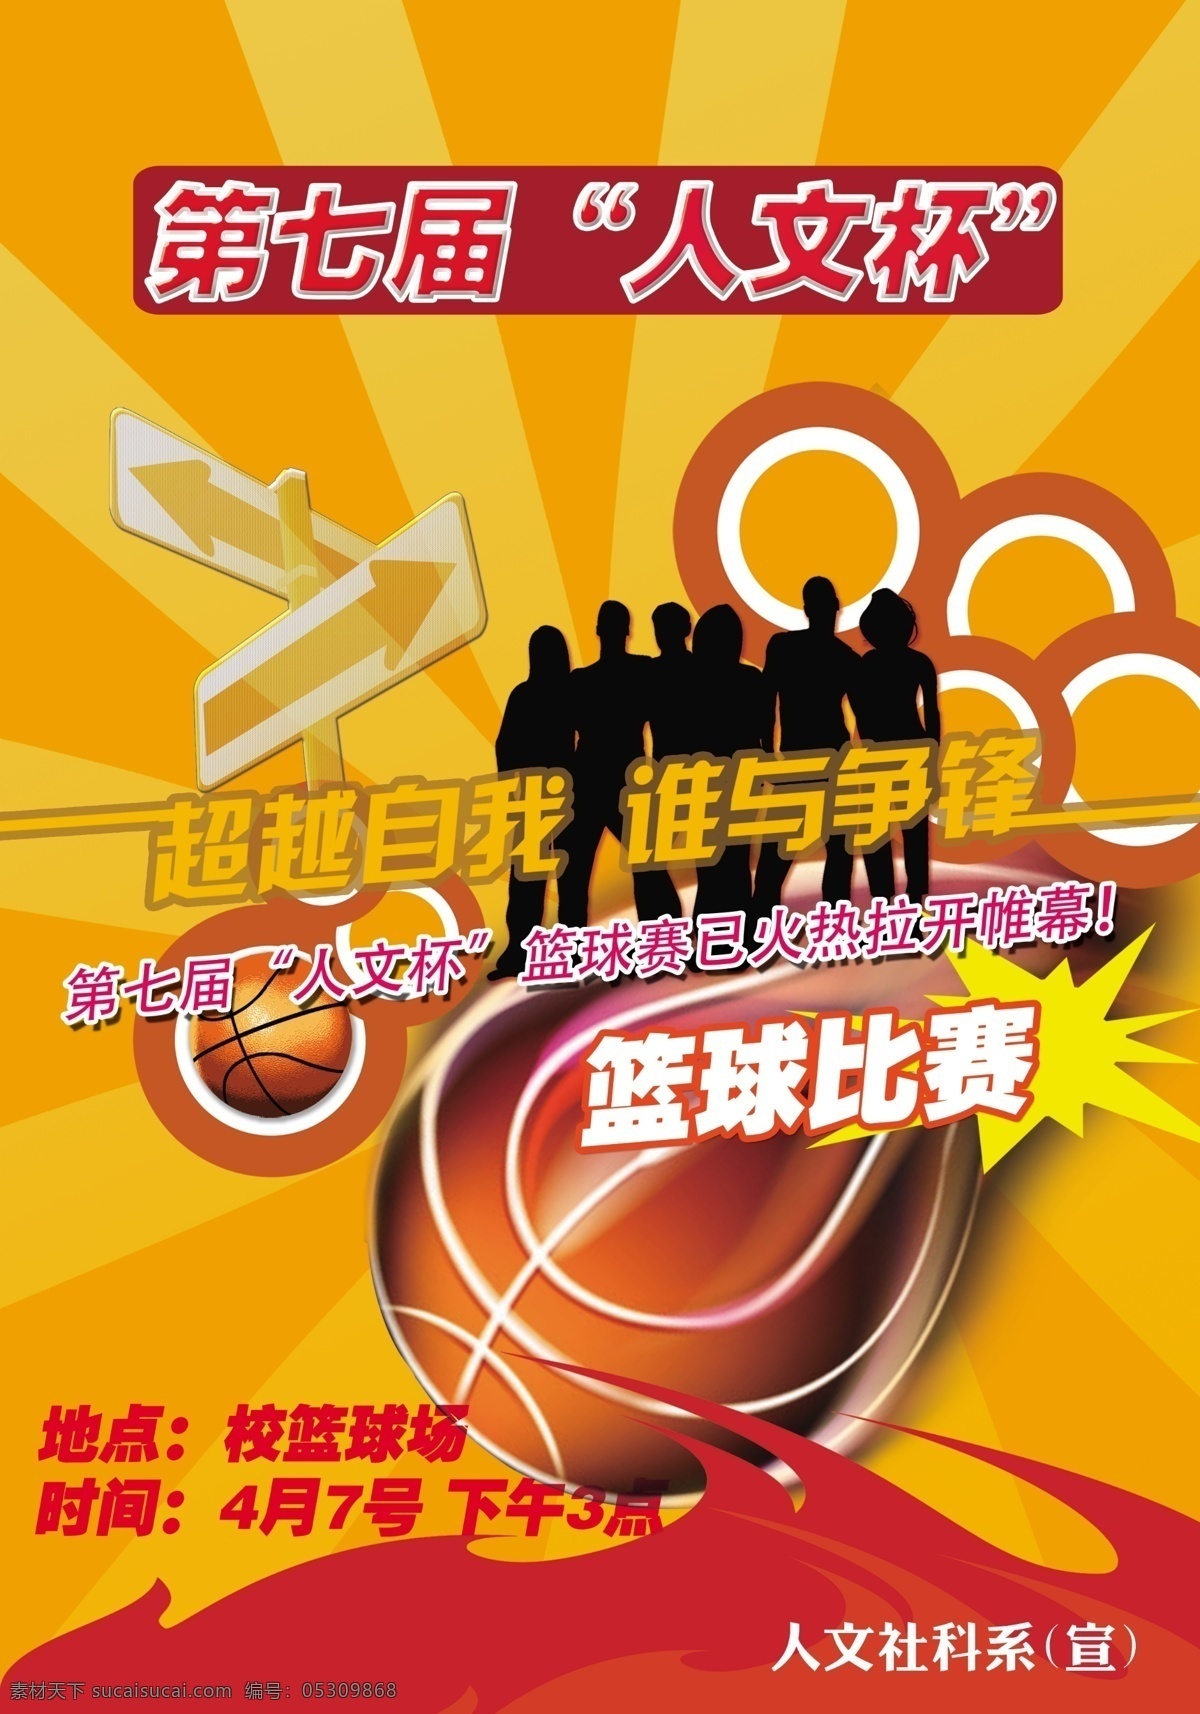 篮球赛海报 篮球赛 海报 比赛 大赛 人文杯 篮球 运动 火热 开赛 广告设计模板 源文件